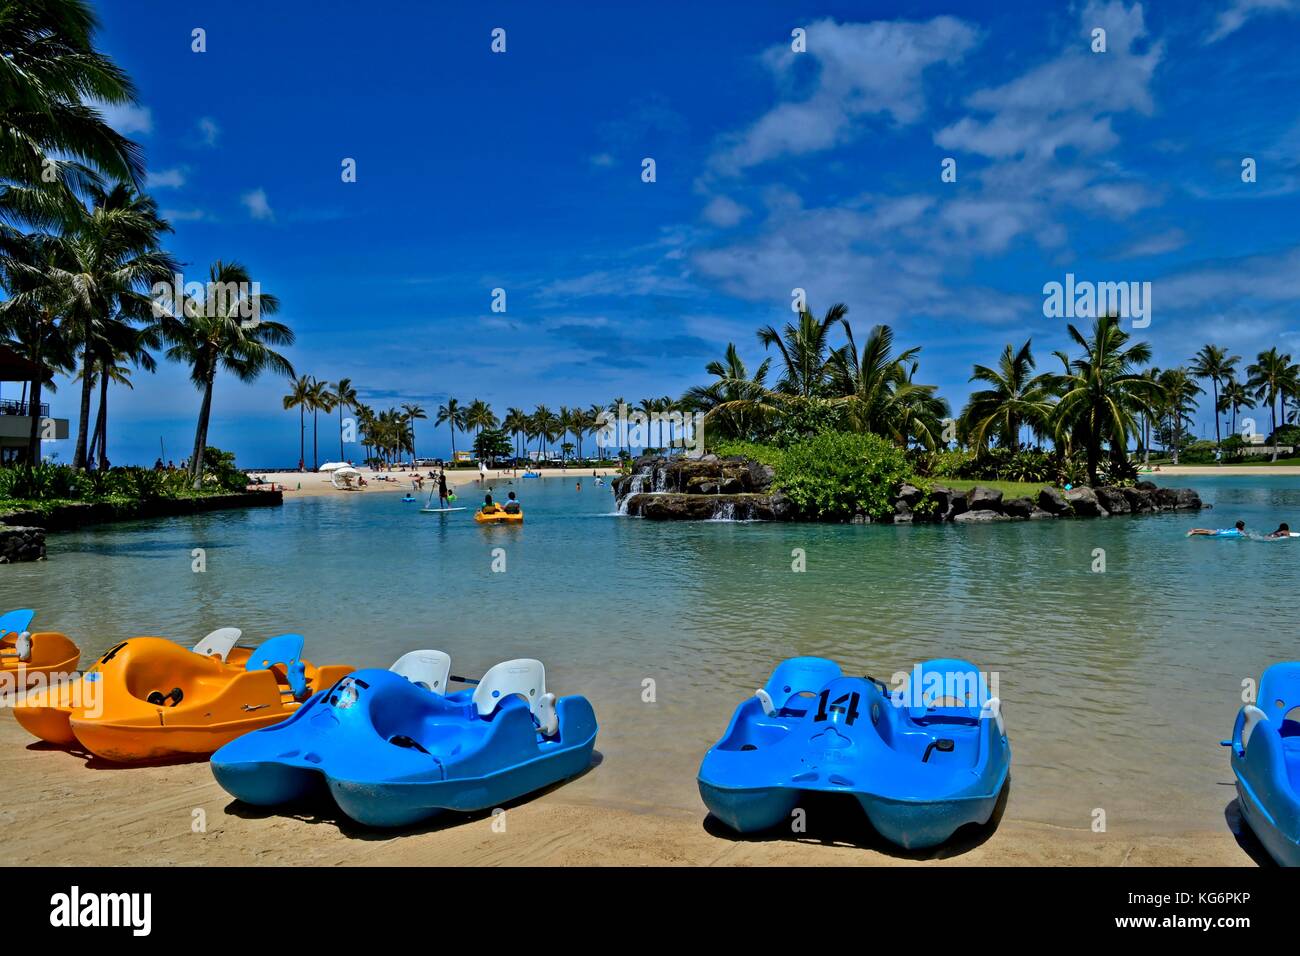 Waikiki, HI, Stati Uniti d'America - 5 Luglio 2015: barche a pedali sulla spiaggia della Laguna di Duke Kahanamoku all'Hilton Hawaiian Village. La Laguna è molto popolare. Foto Stock